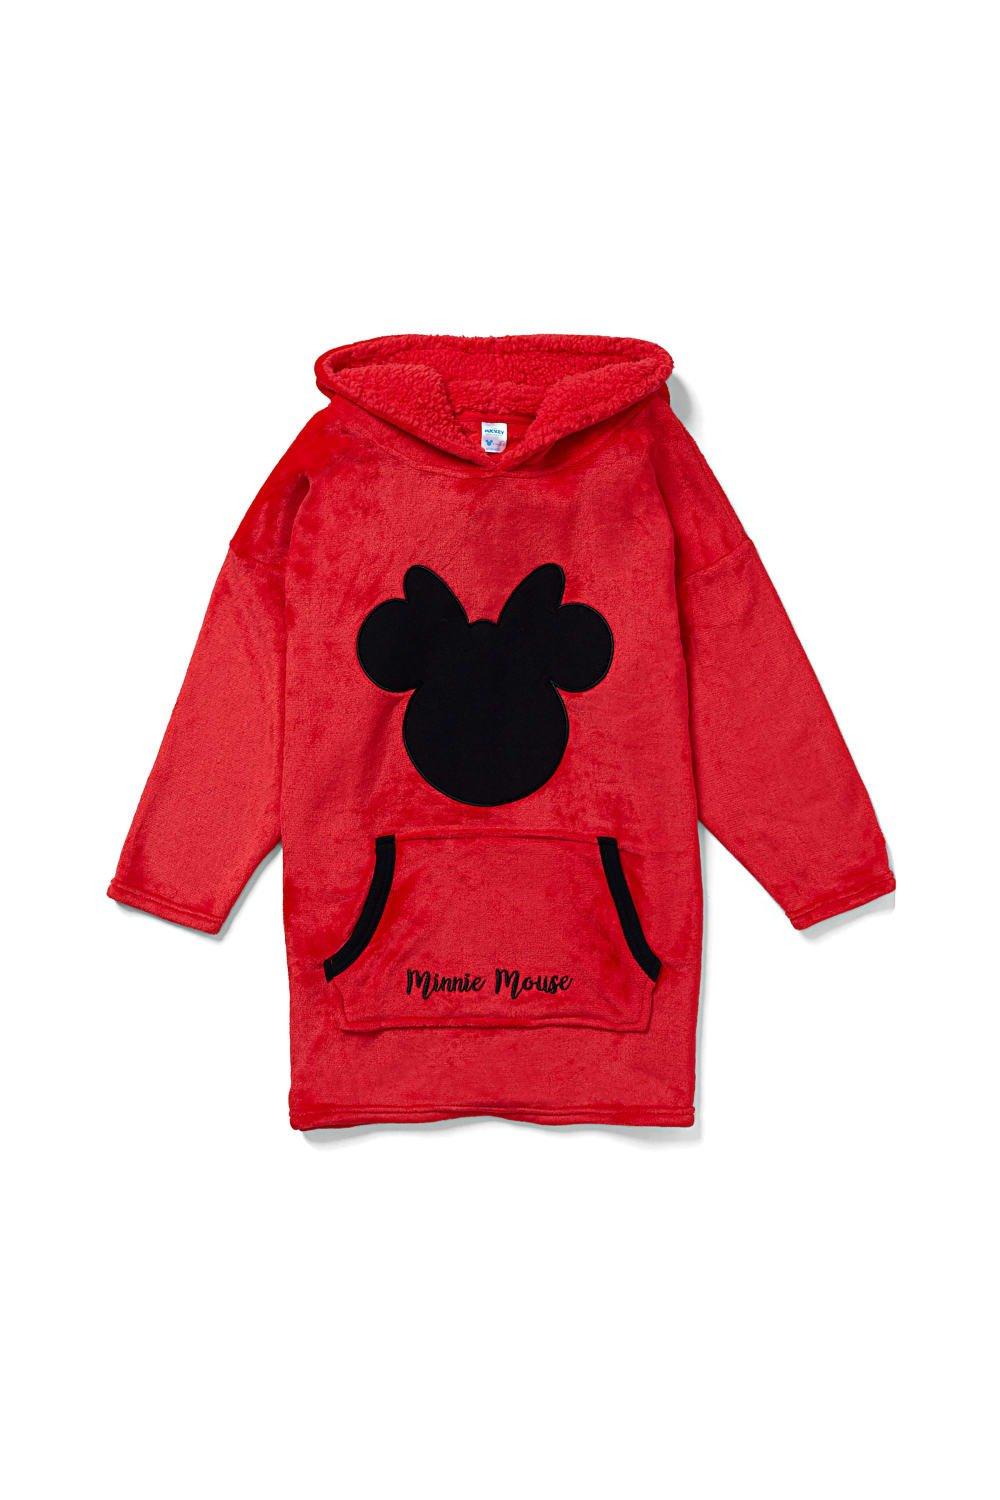 Объемное флисовое одеяло с капюшоном и Минни Маус, одежда для дома Disney, красный игровой набор корзина с продуктами минни маус